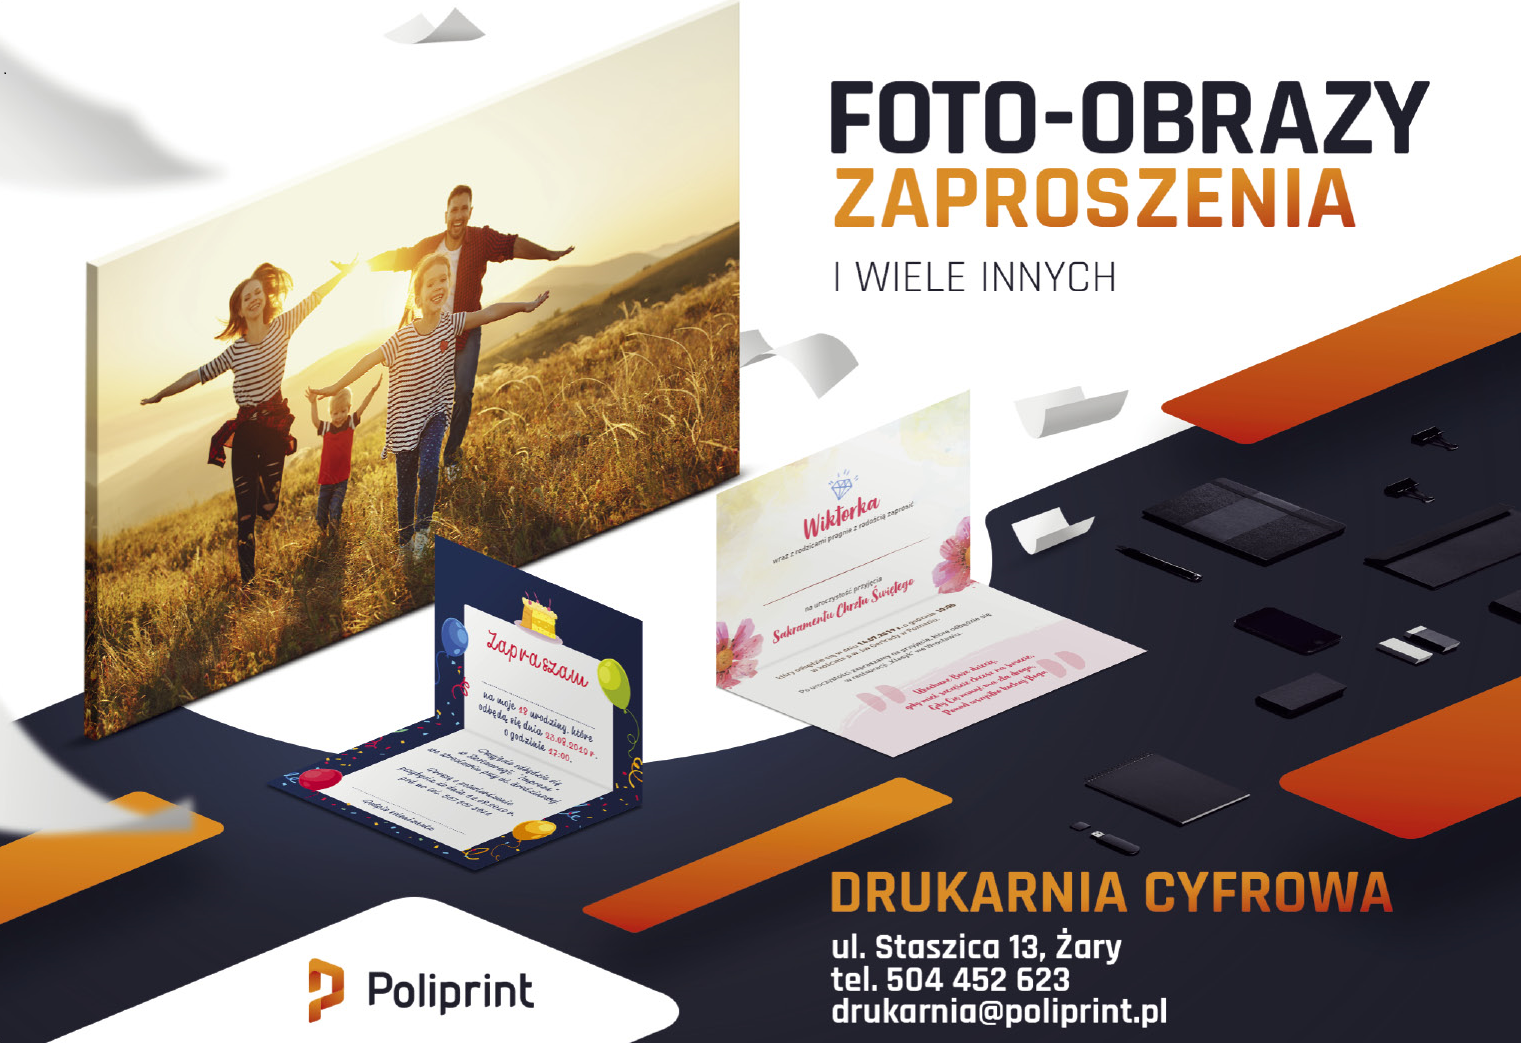 "POLIPRINT" Żary Drukarnia Cyfrowa / Foto-Obrazy / Zaproszenia / Inne